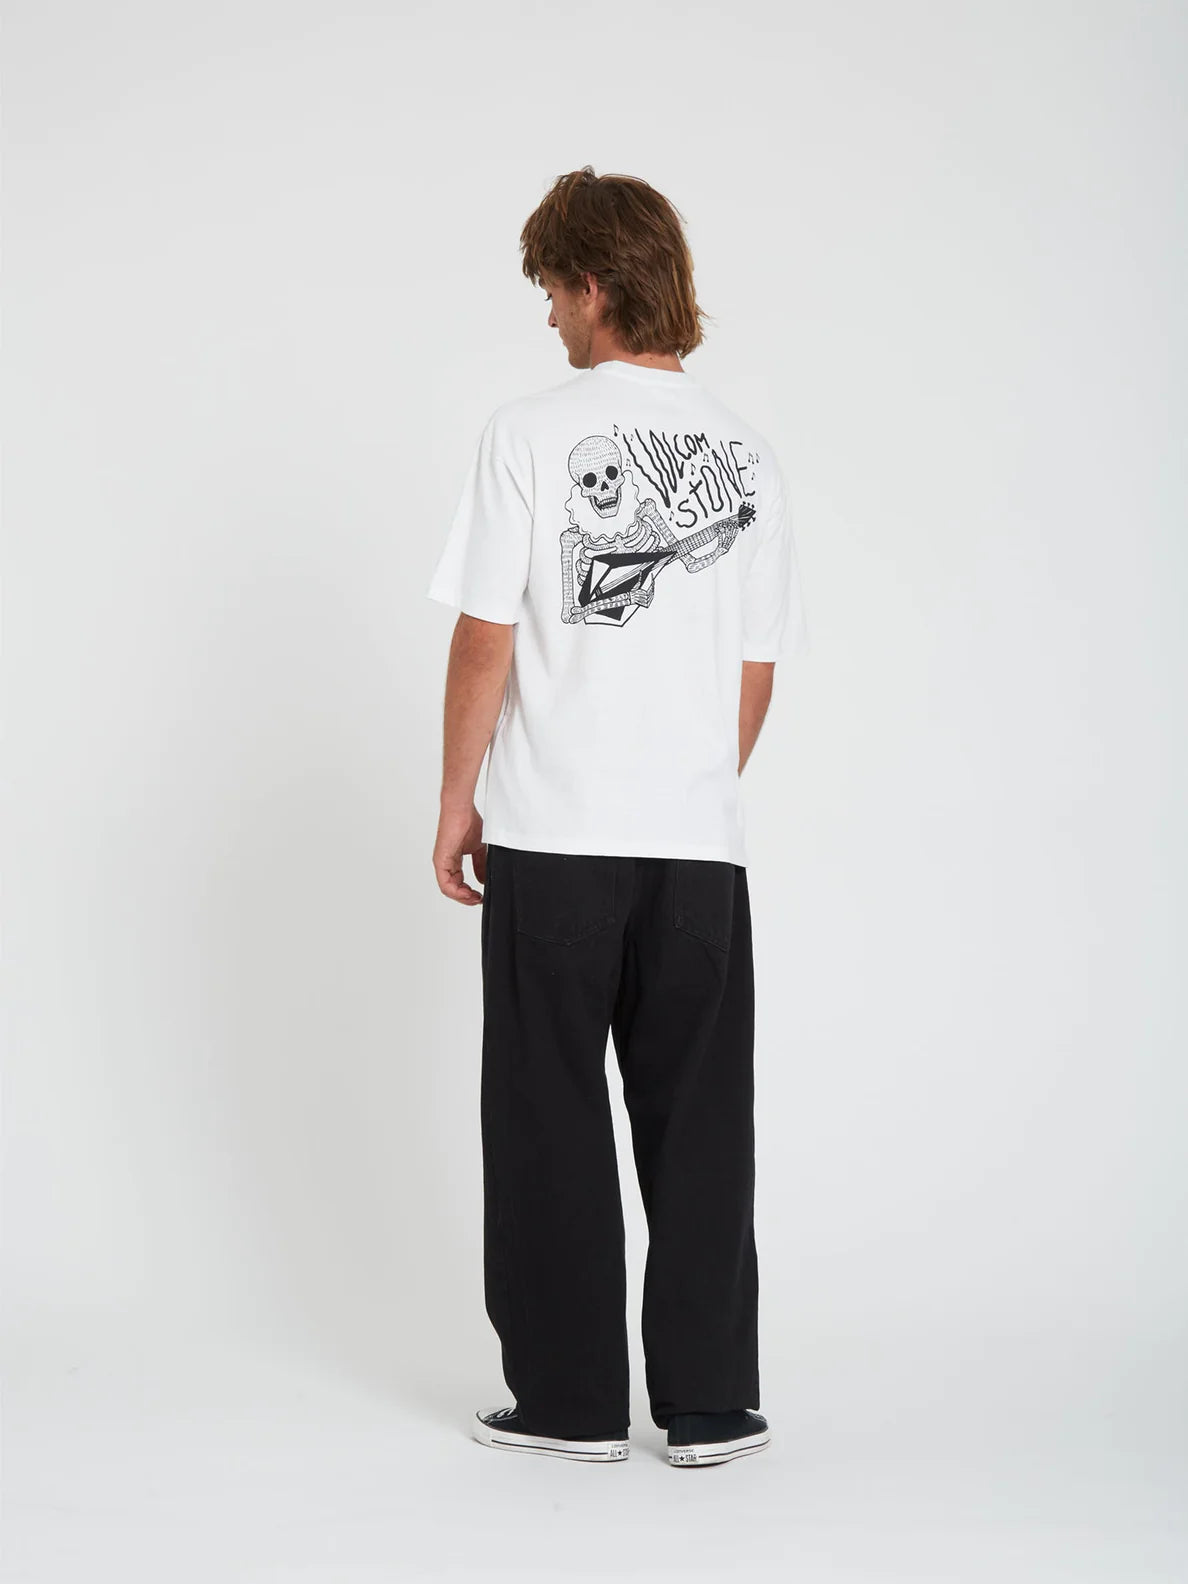 Camiseta Volcom Shredead White | Camisetas de hombre | Camisetas manga corta de hombre | Volcom Shop | surfdevils.com